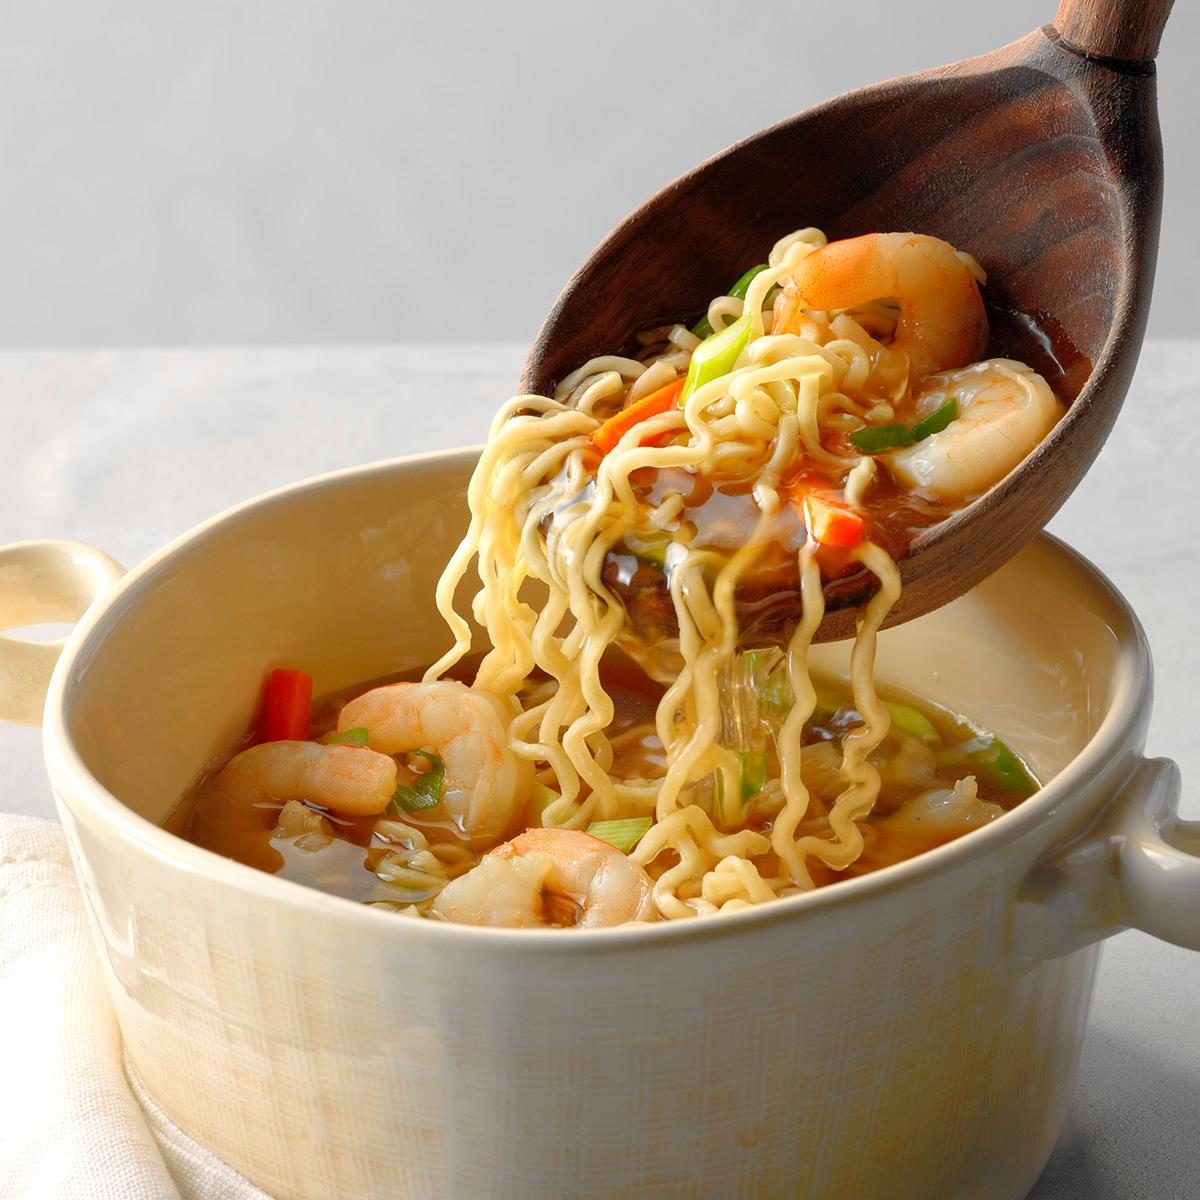 Nissin Ramen Noodle Soup, Shrimp Flavor 3 Oz, Asian Soups & Ramen